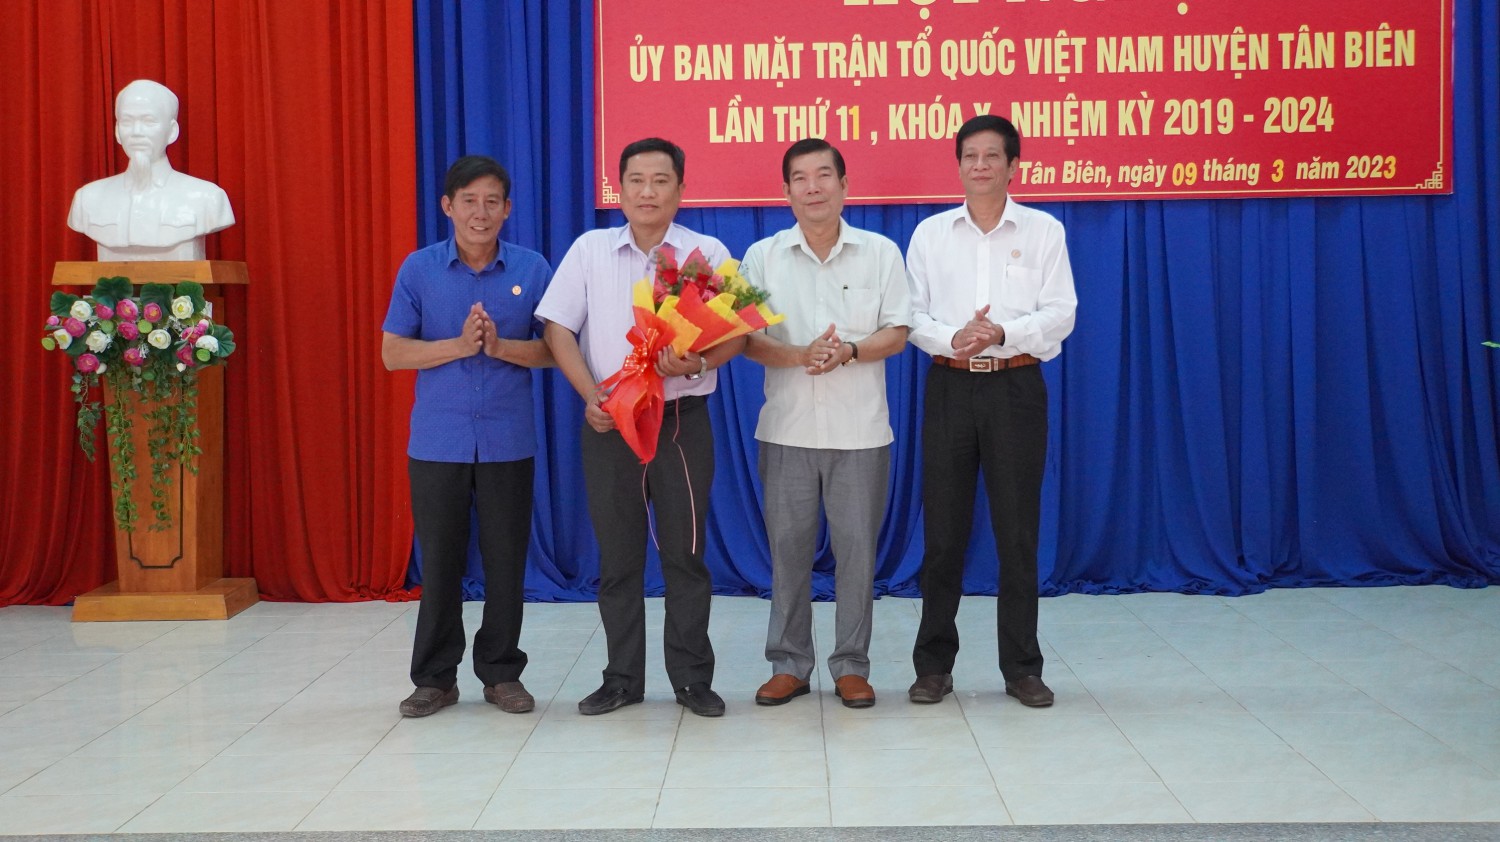 Tân Biên Hiệp thương Bầu chức danh Chủ tịch UBMTTQ Việt Nam Huyện, nhiệm kỳ 2019 – 2024